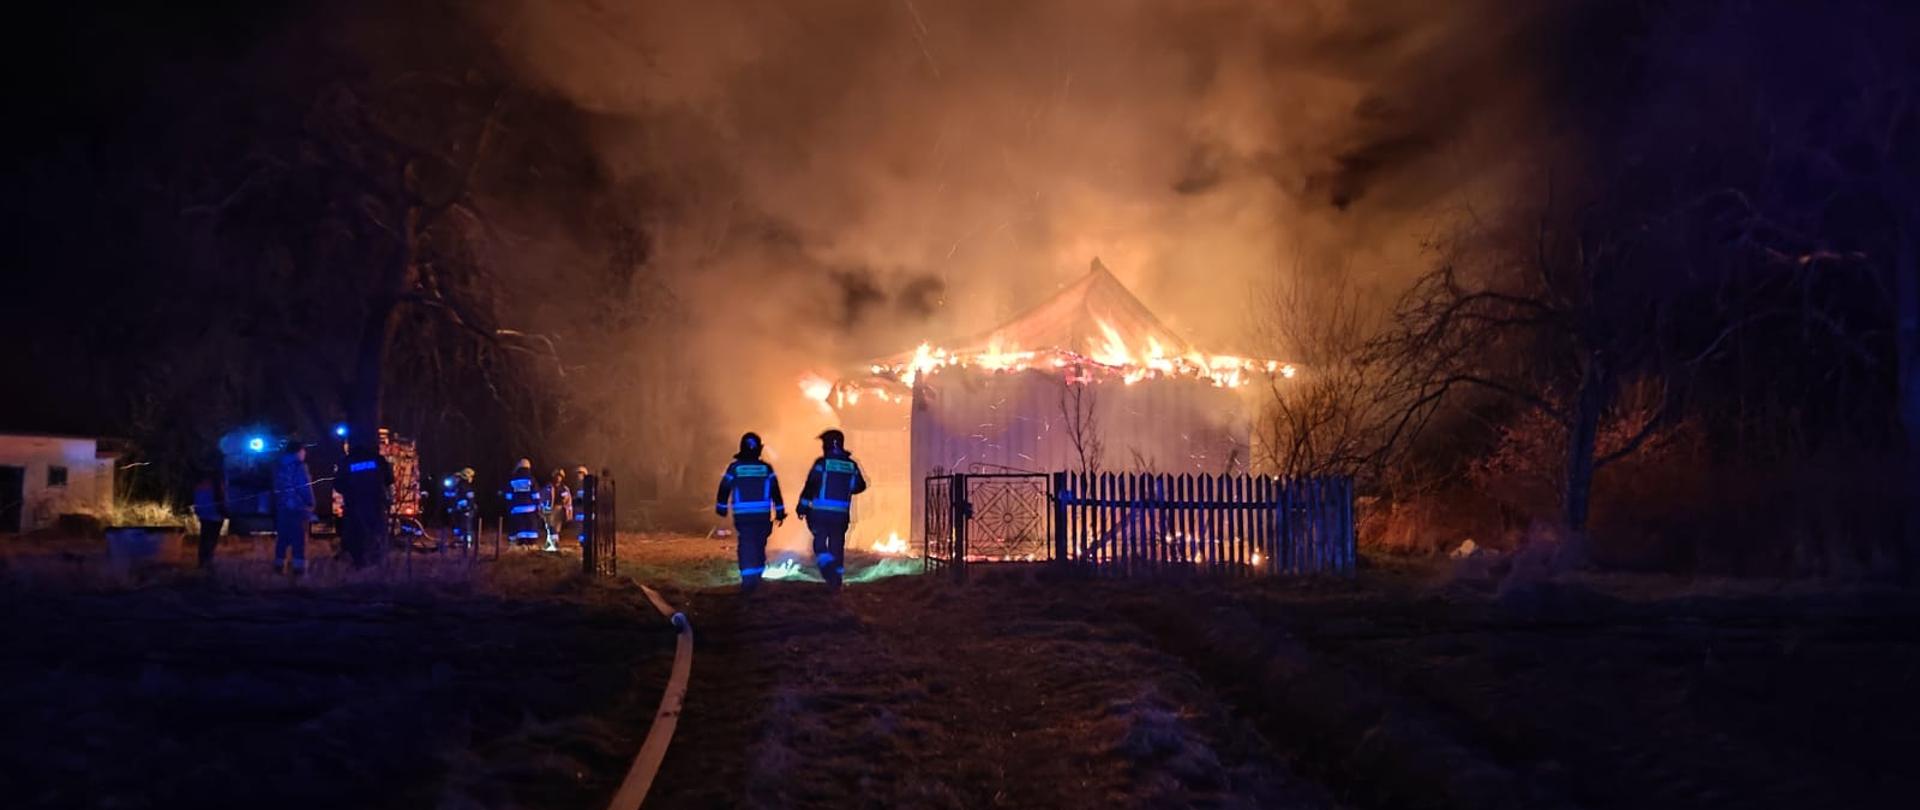 na zdjęciu widać płonący dach budynku niezamieszkałego, po lewej linie gaśnicze i strażacy.